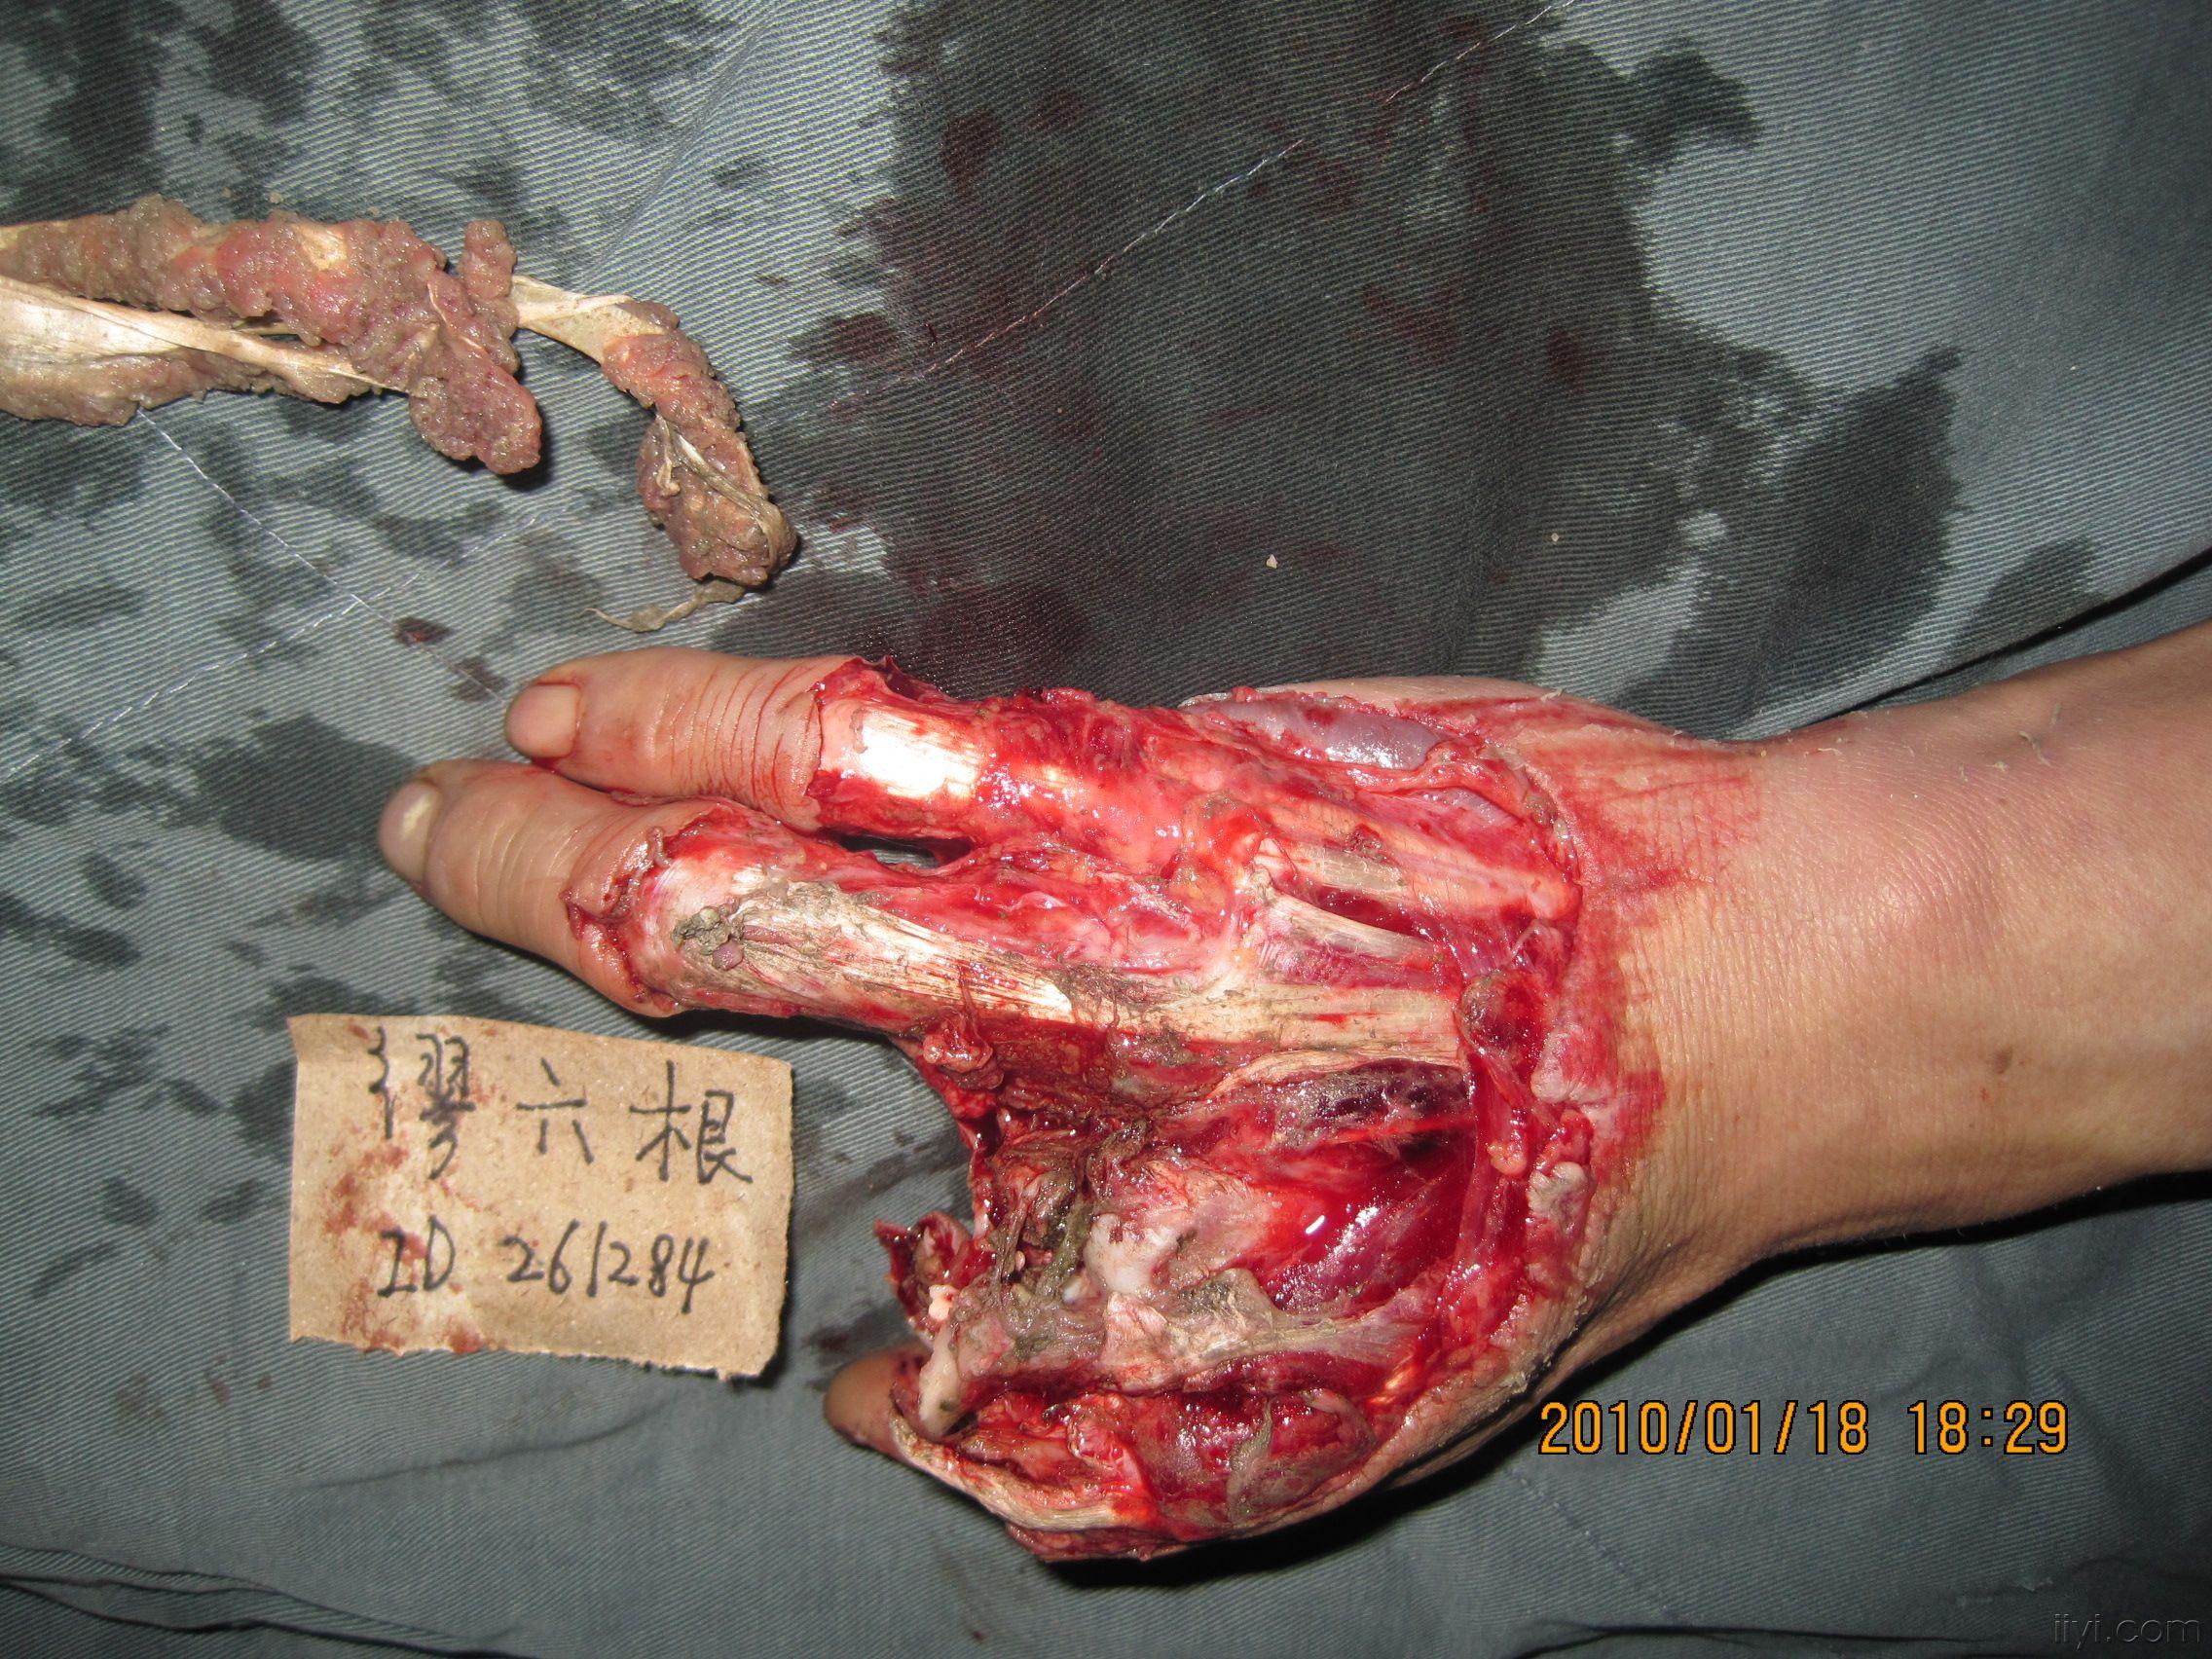 当时食指中指均予再植,中指掌指关节融合,食指深屈肌建接中指浅屈肌腱